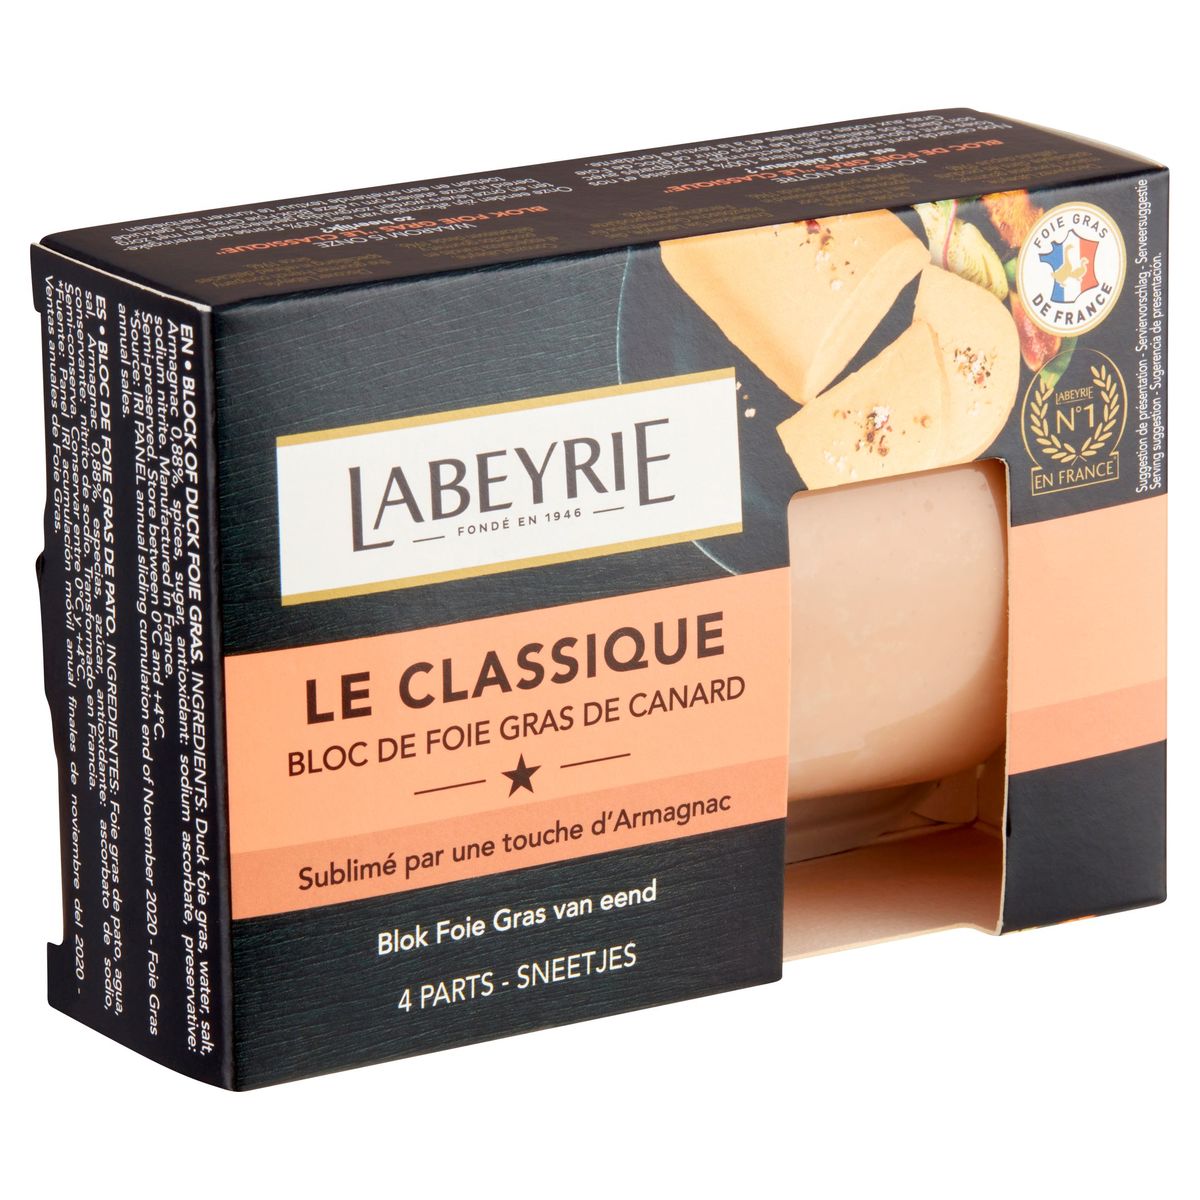 Labeyrie Le Classique Blok de Foie Gras de Canard 150 g